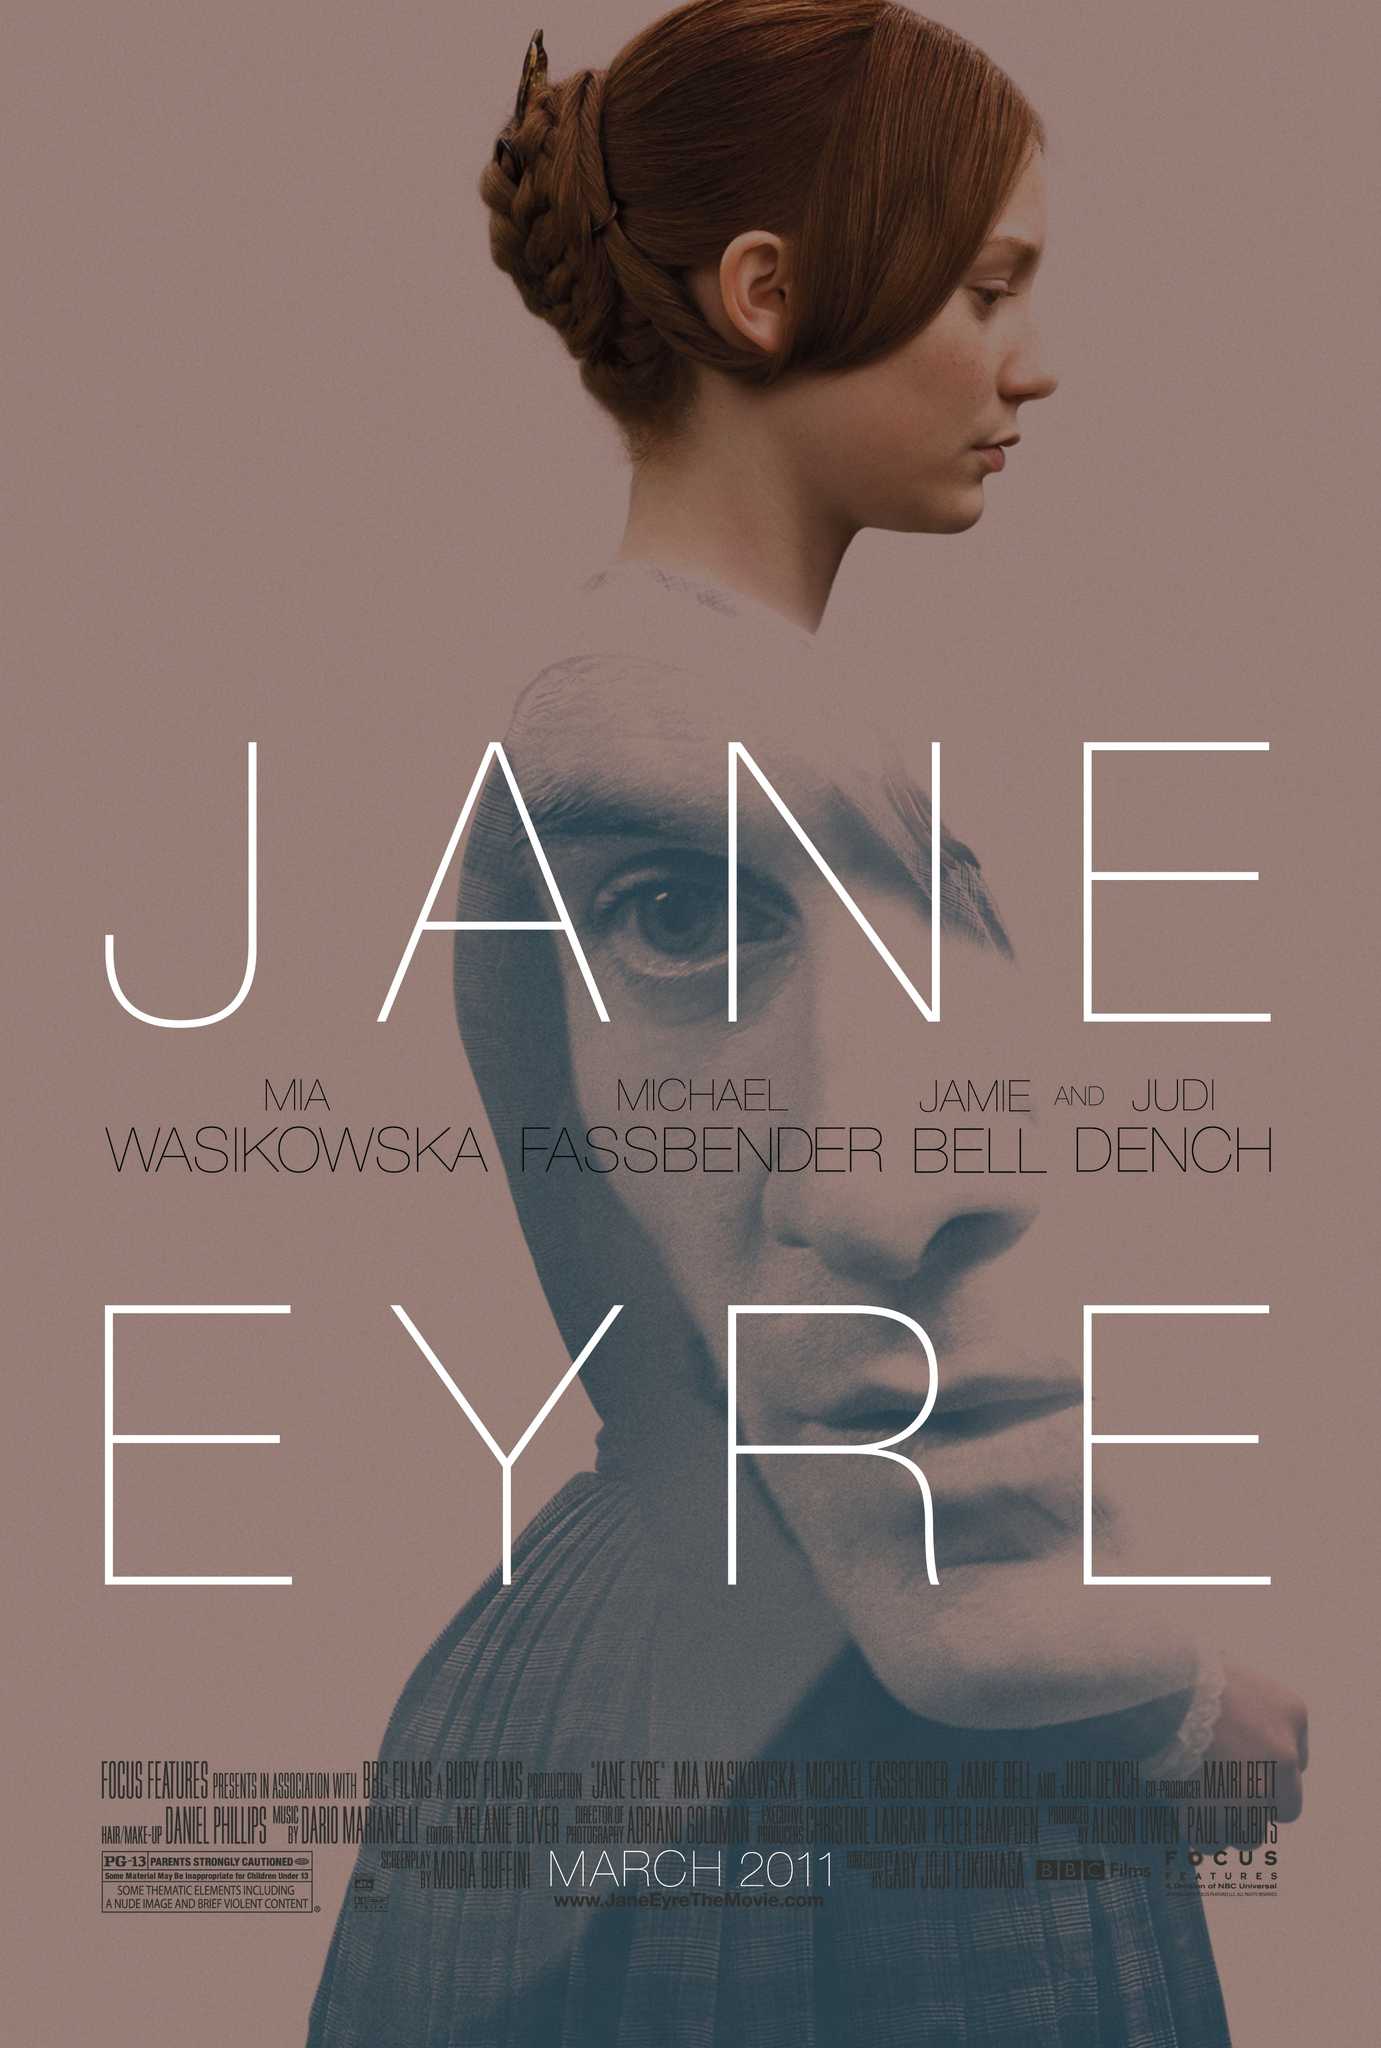 Chuyện tình nàng jane eyre - Jane eyre